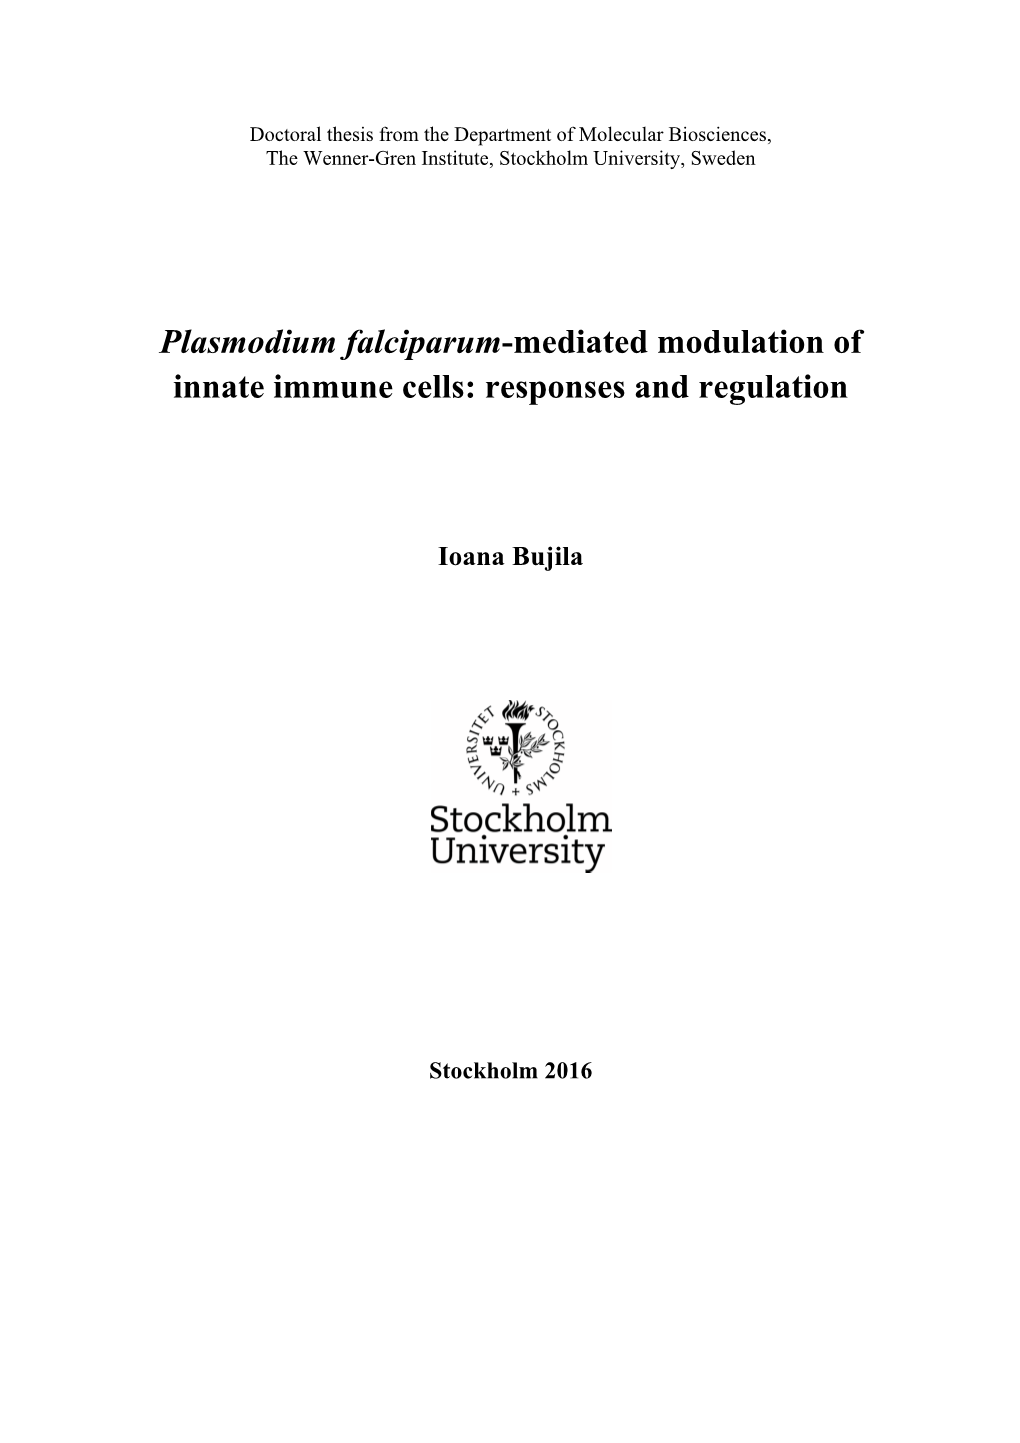 Plasmodium Falciparum-Mediated Modulation of Innate Immune Cells: Responses and Regulation